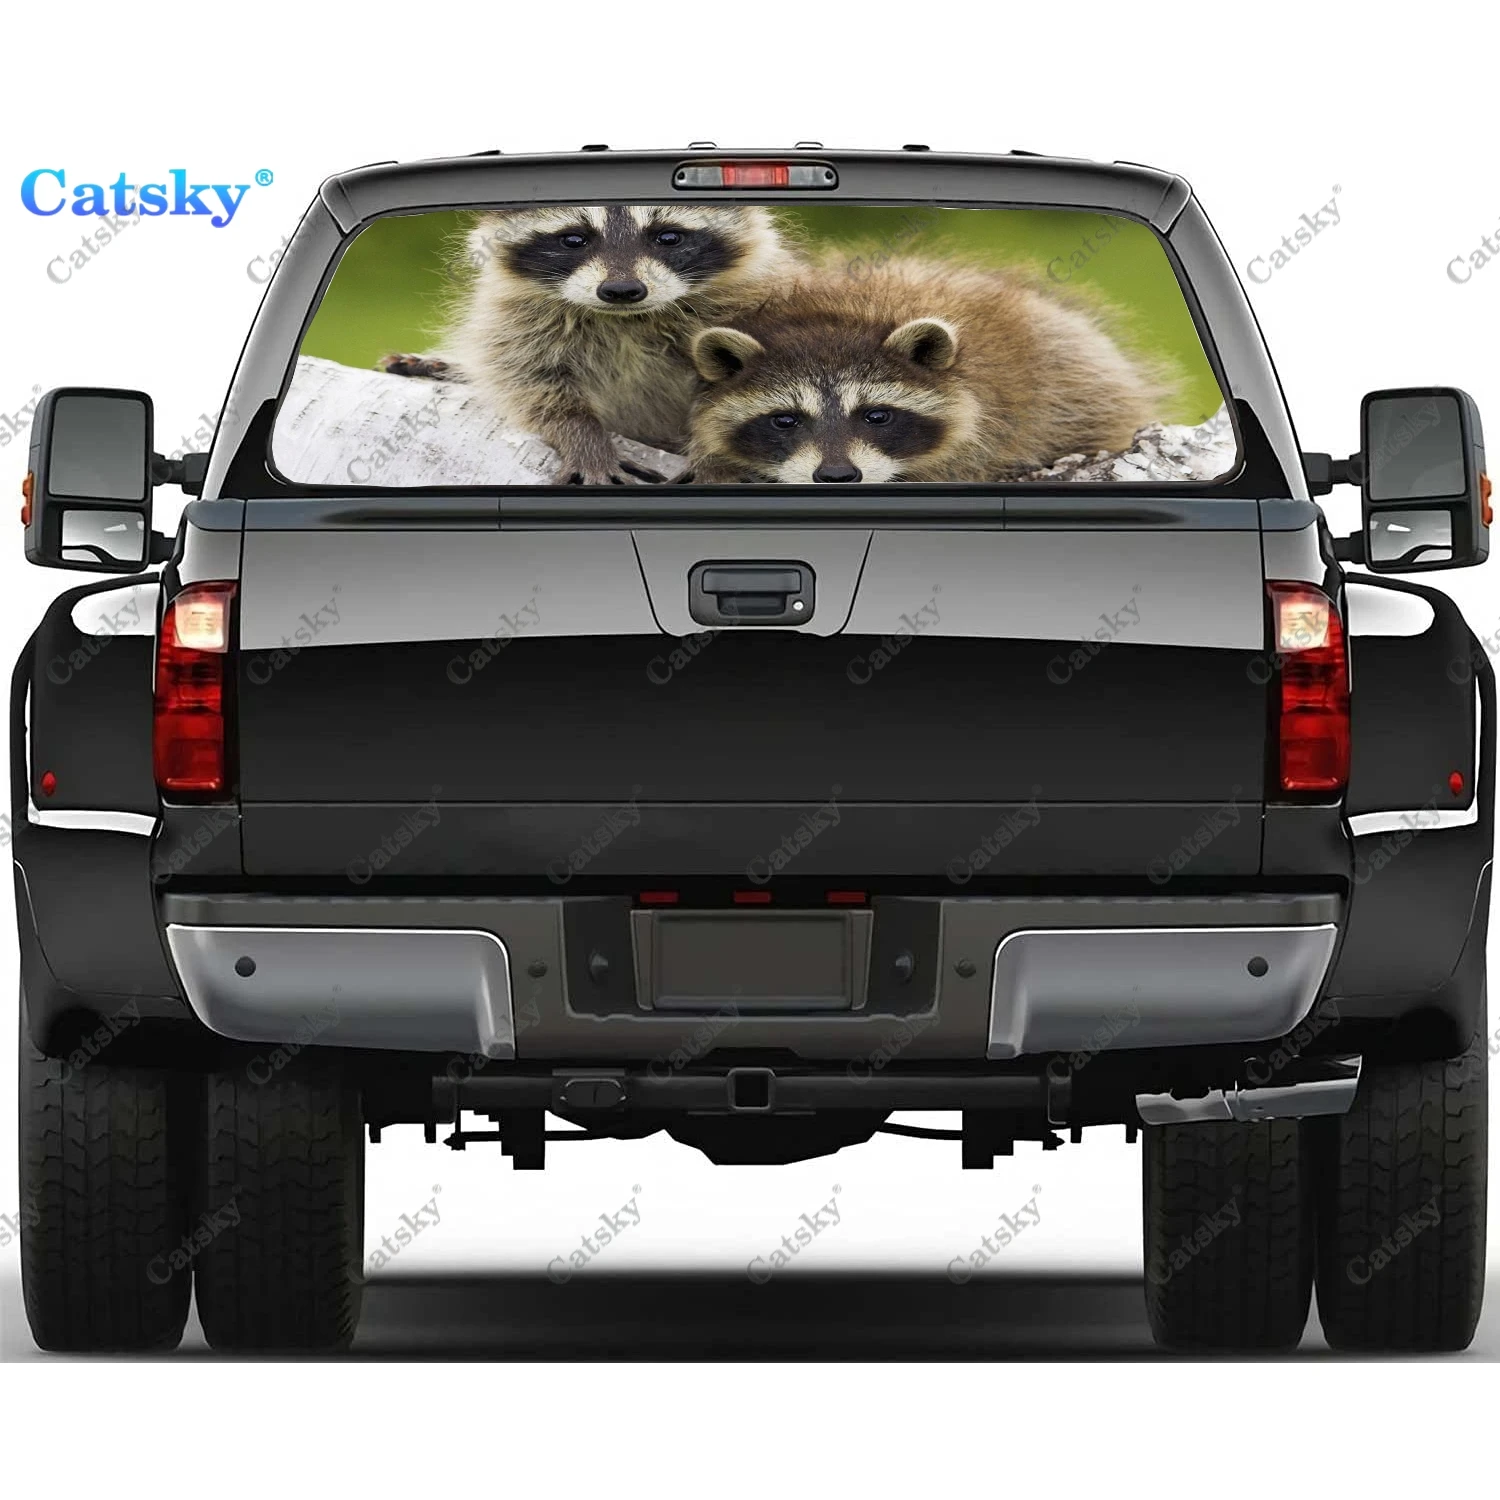 

Енот животное милая фотография ПВХ декоративная наклейка для грузовика перфорированная виниловая универсальная наклейка